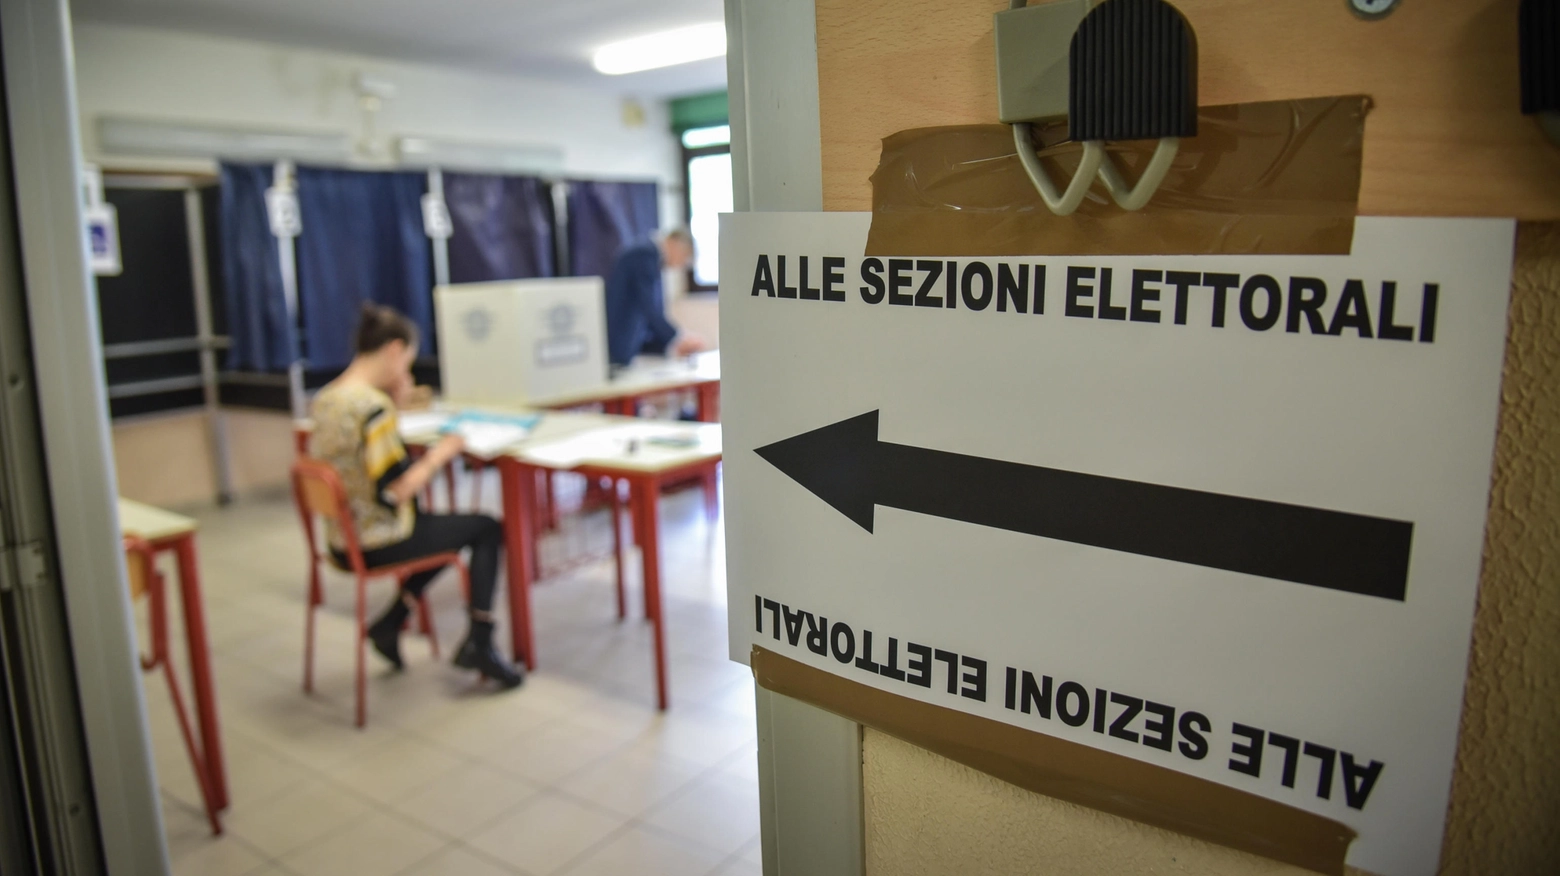 Seggi elettorali aperti fino alle 23 di domenica 9 giugno per le elezioni europee e amministrative